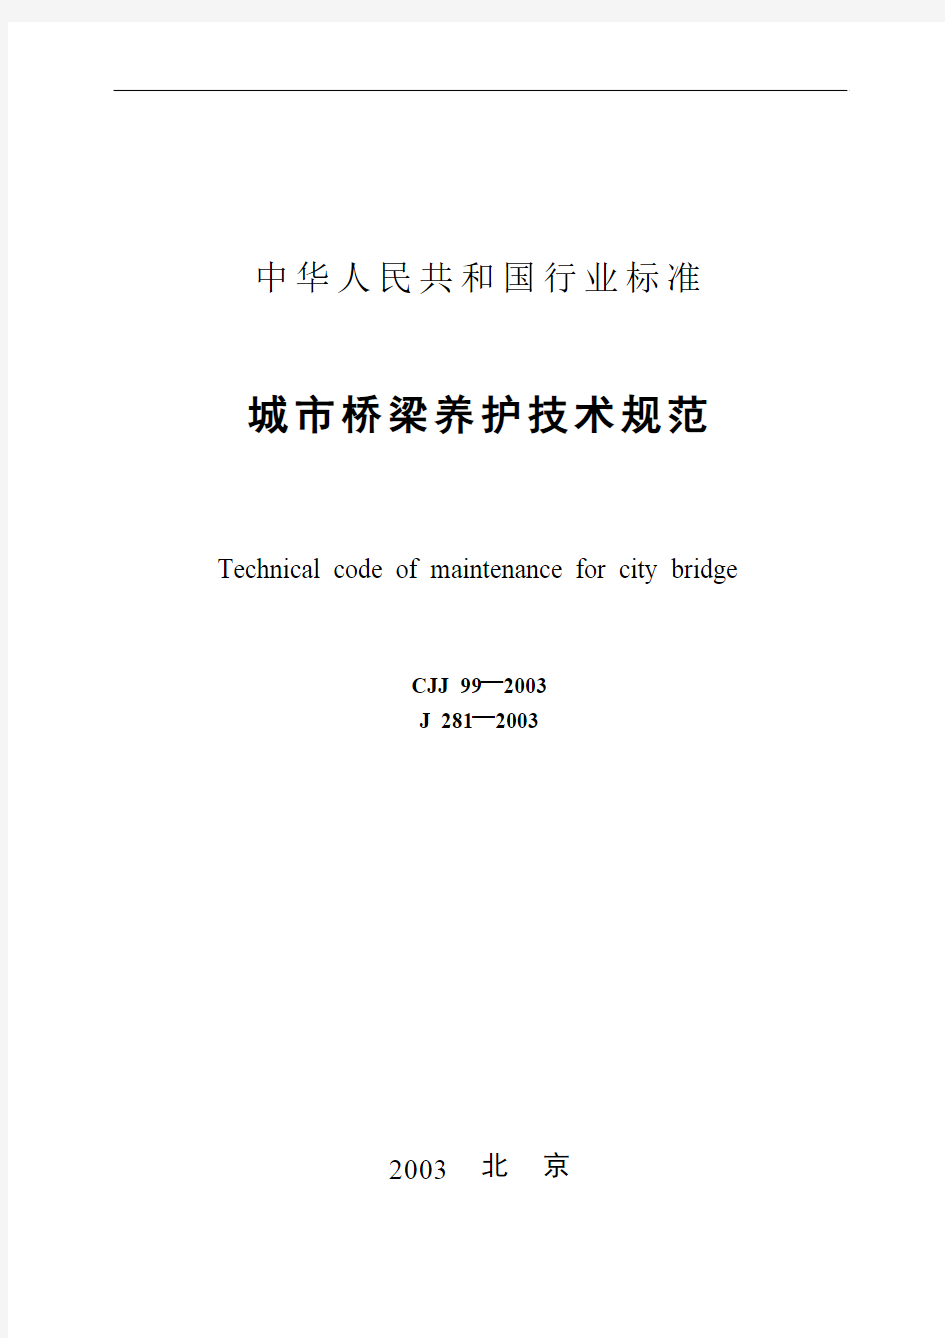 《城市桥梁养护技术规范》CJJ99-2003